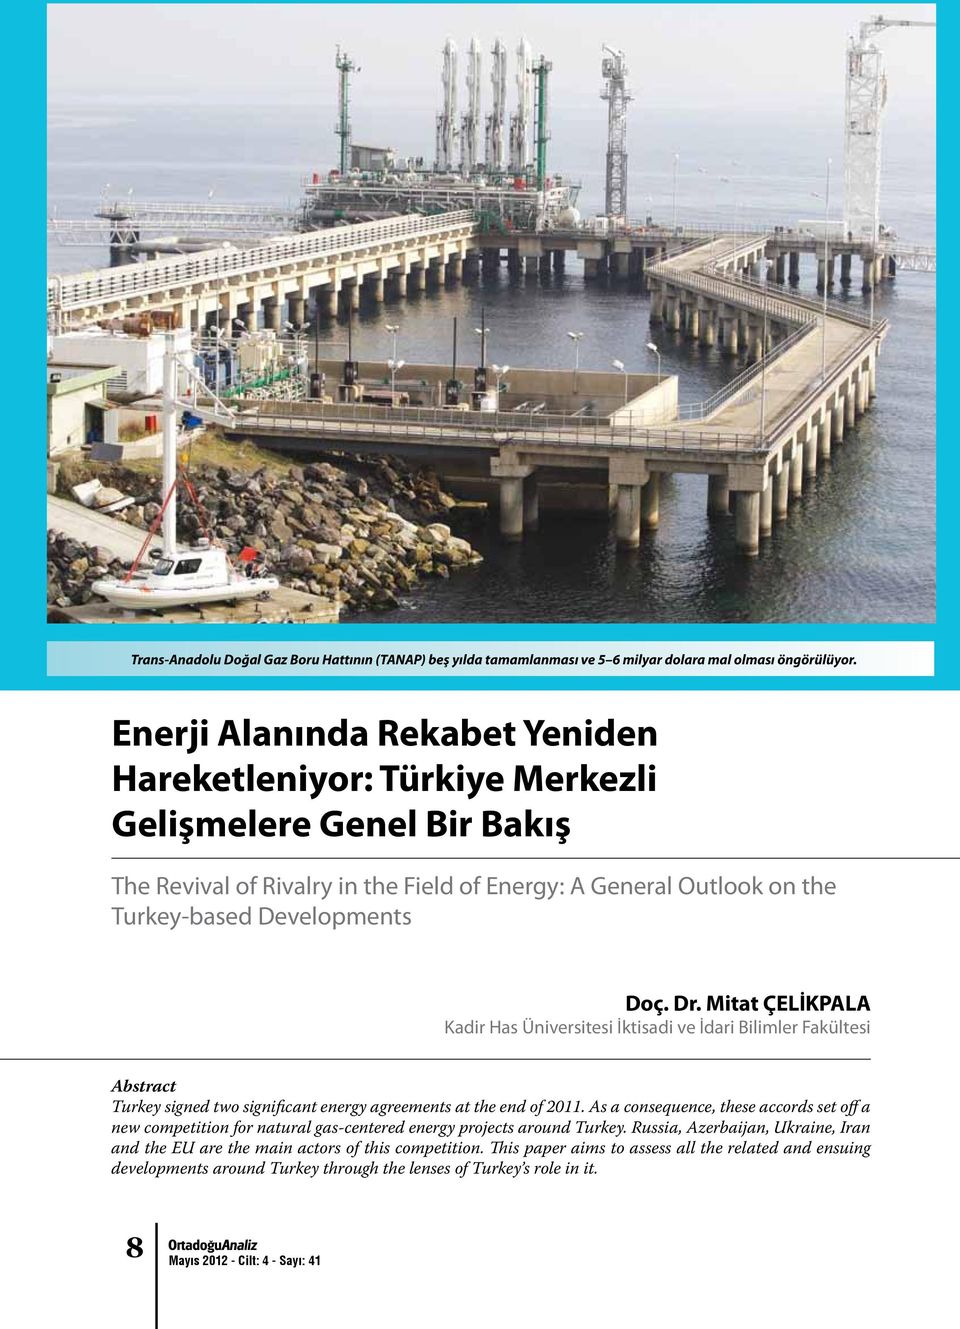 Dr. Mitat ÇELİKPALA Kadir Has Üniversitesi İktisadi ve İdari Bilimler Fakültesi Abstract Turkey signed two significant energy agreements at the end of 2011.